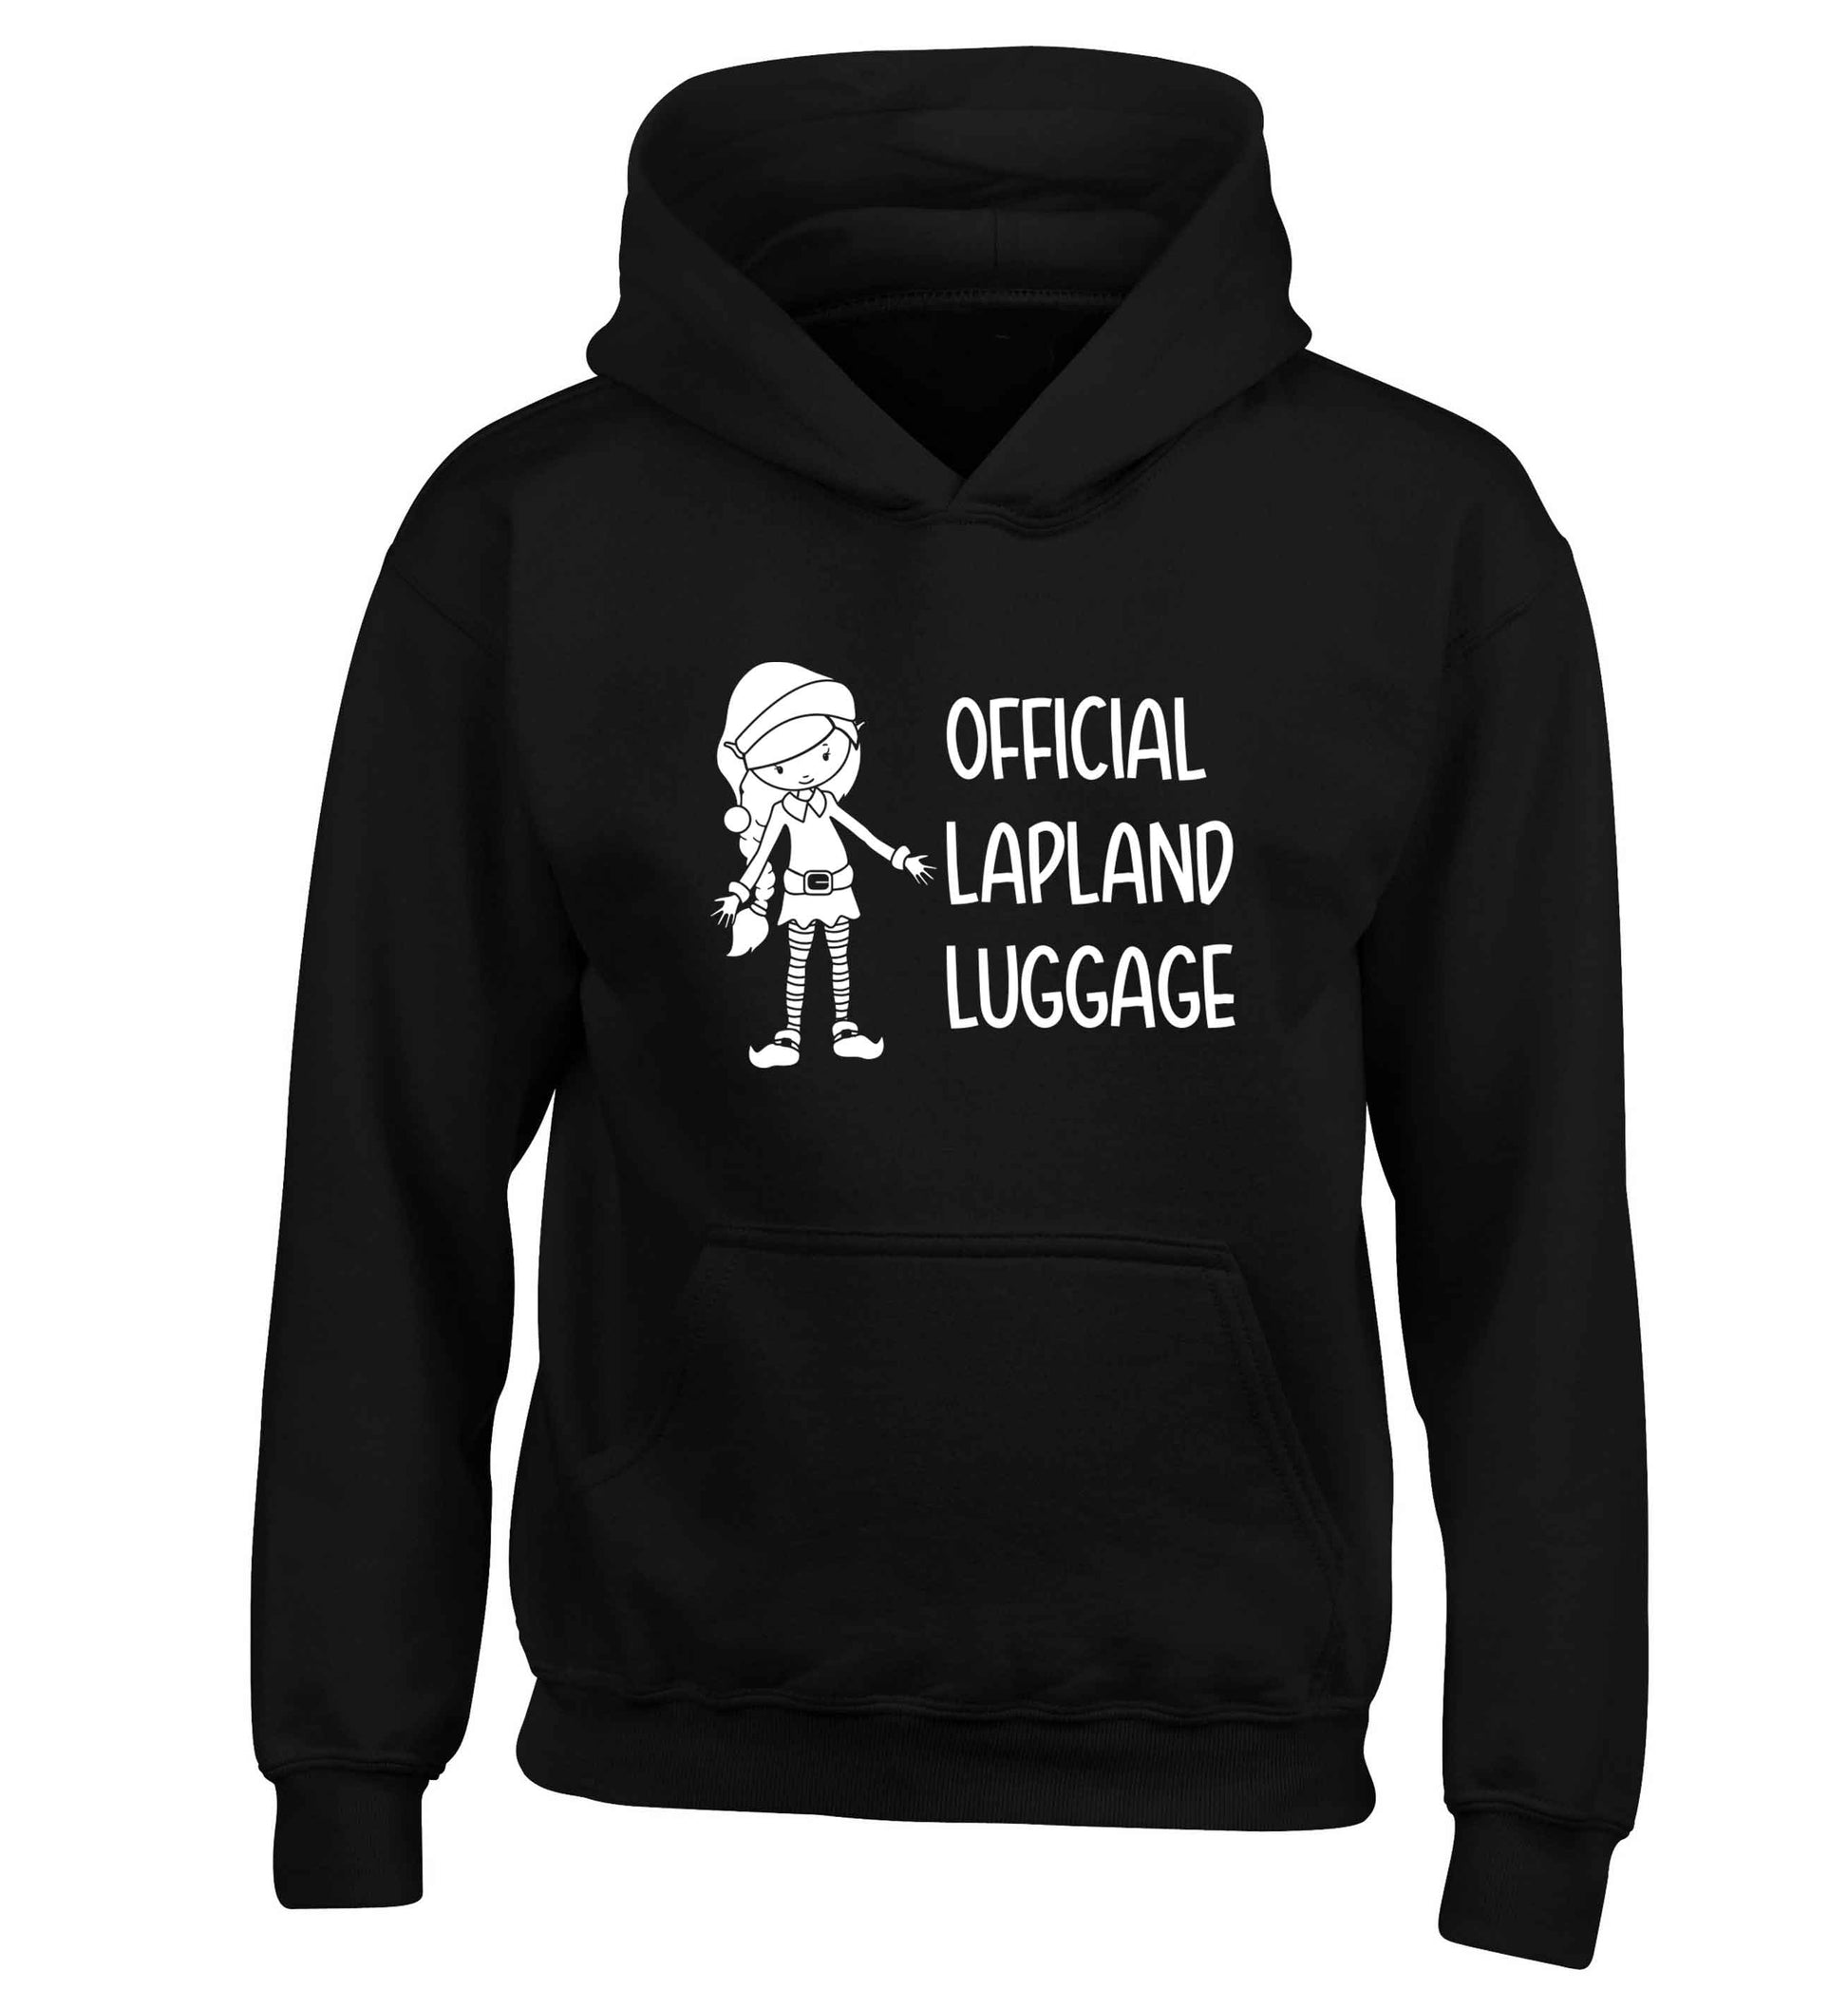 Official lapland luggage - Elf snowflake children's black hoodie 12-13 Years